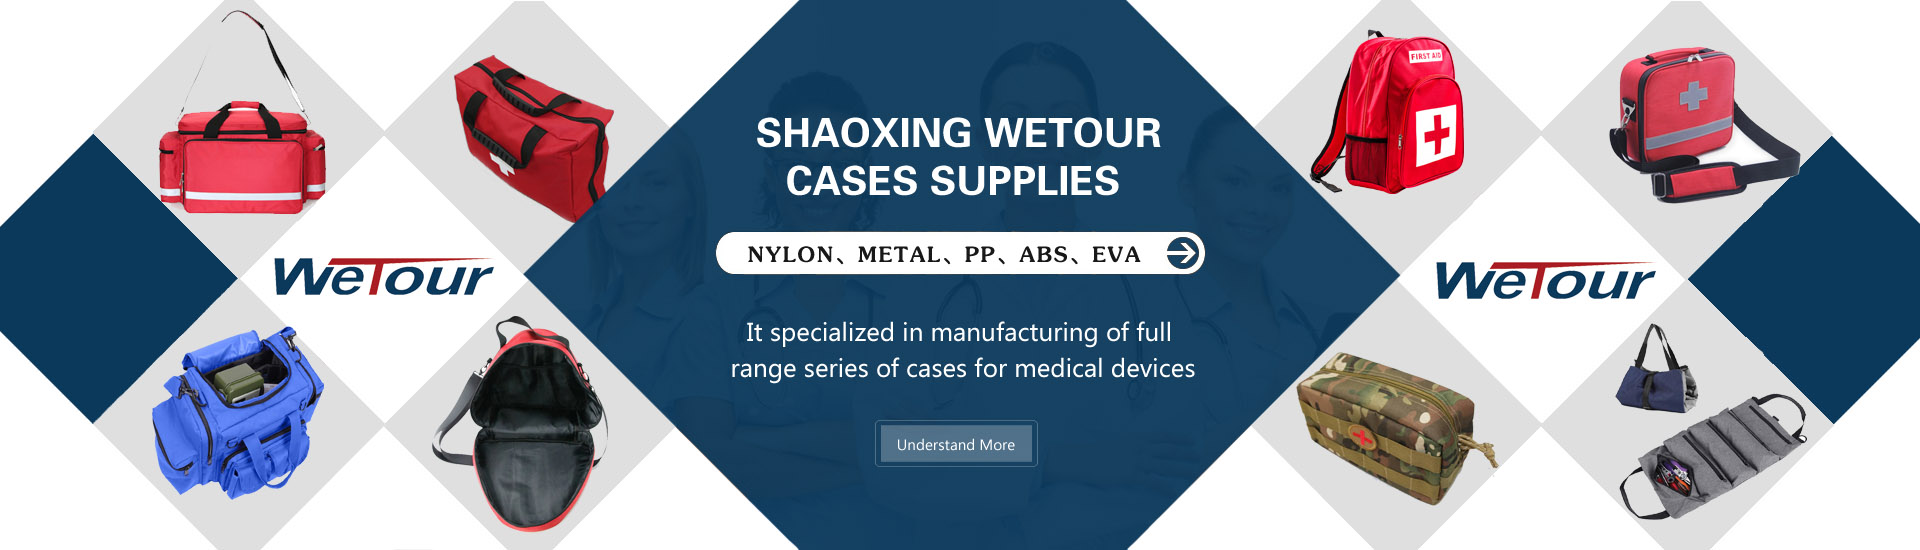 Wetour Cases Supplies